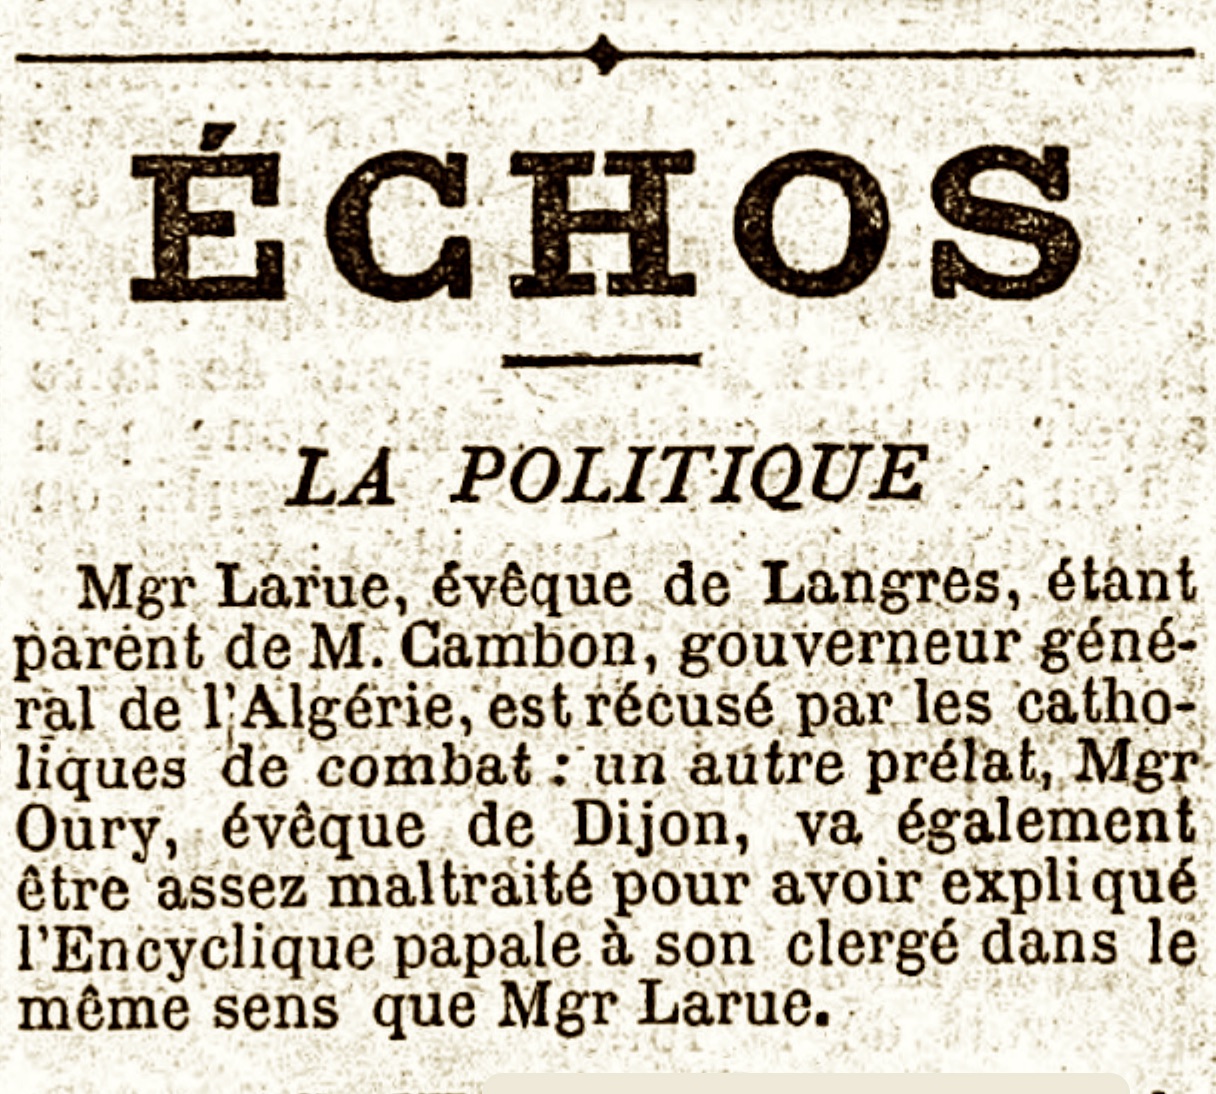 Extrait du journal Le Figaro du 26 avril 1892